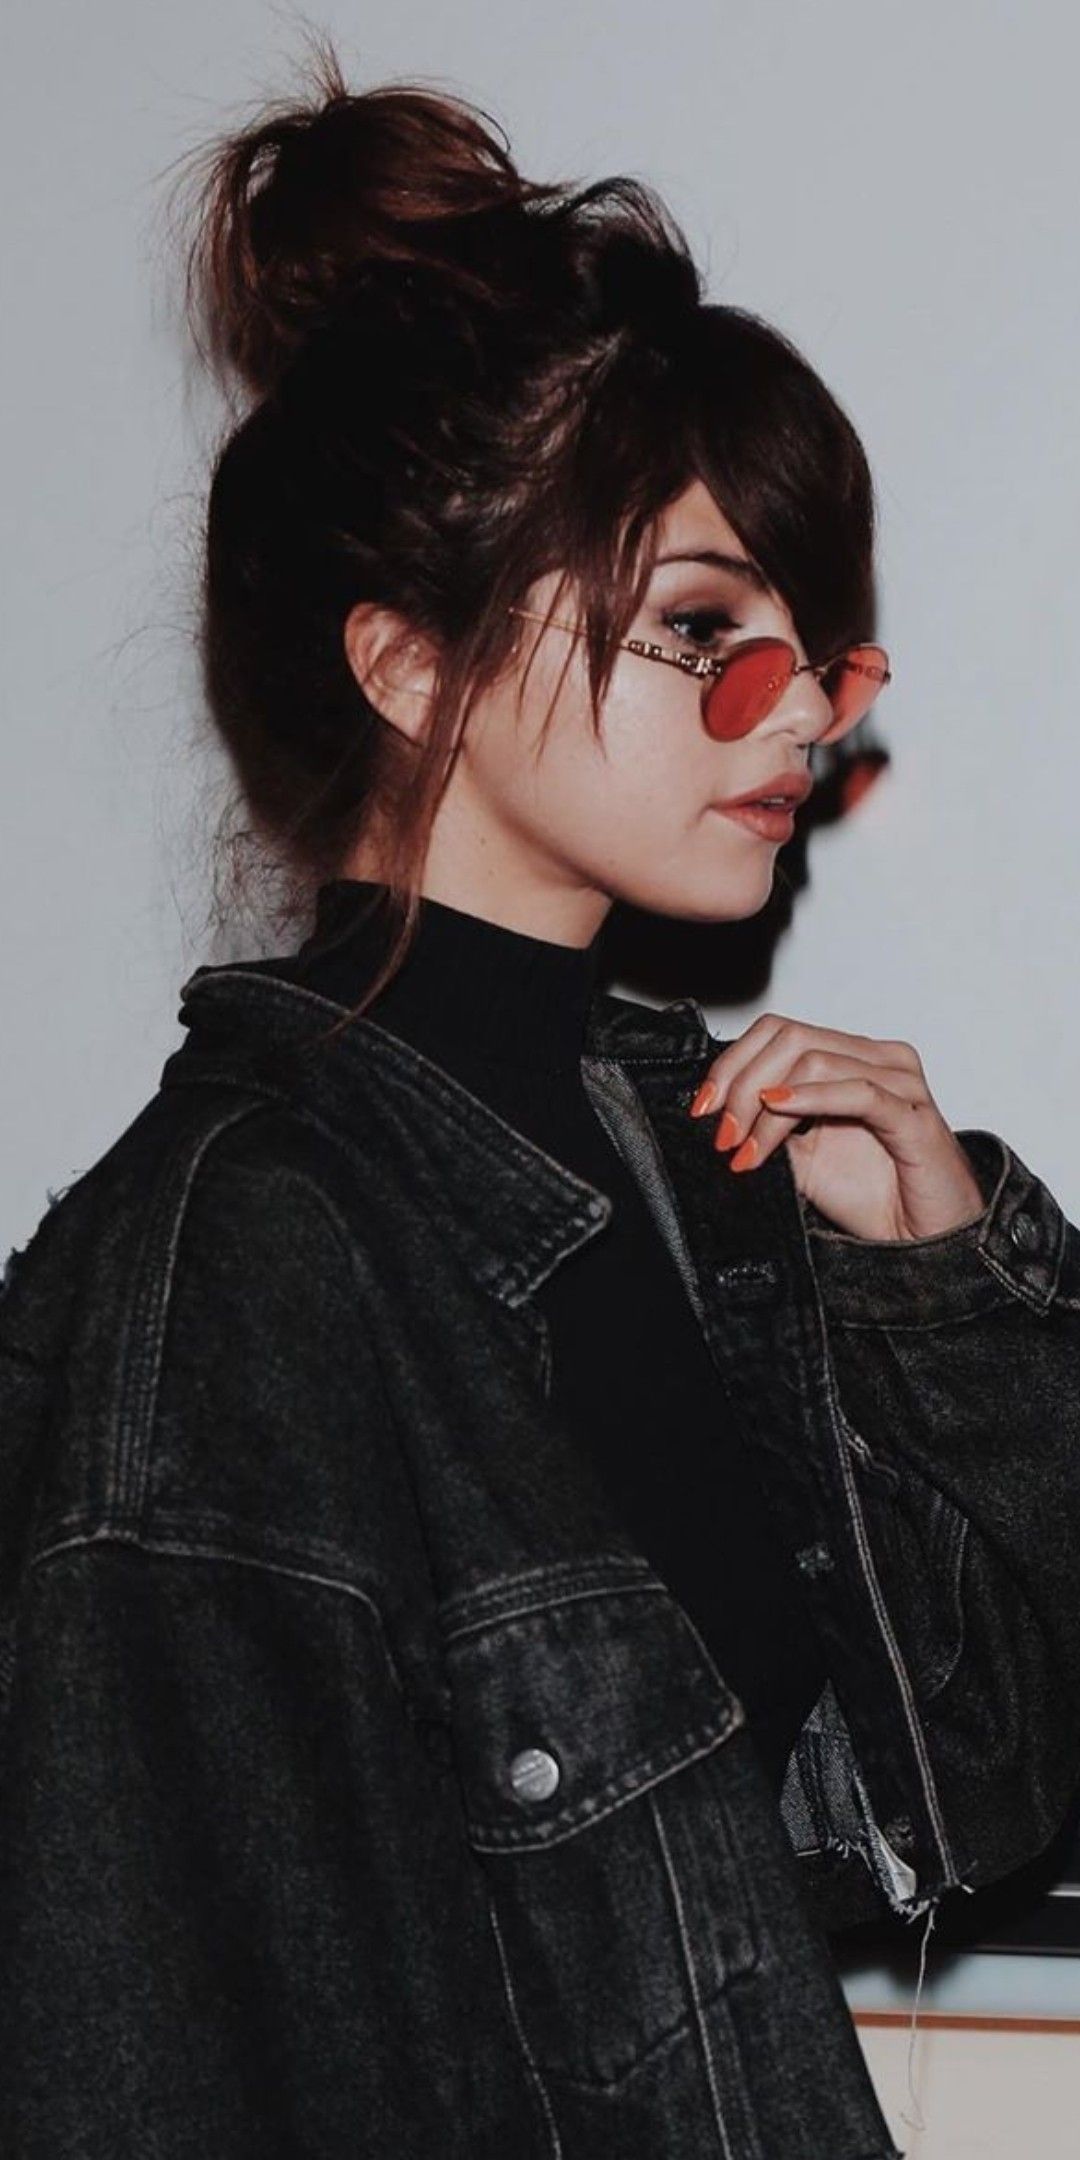 30+] Selena Gomez Tumblr Wallpapers - WallpaperSafari